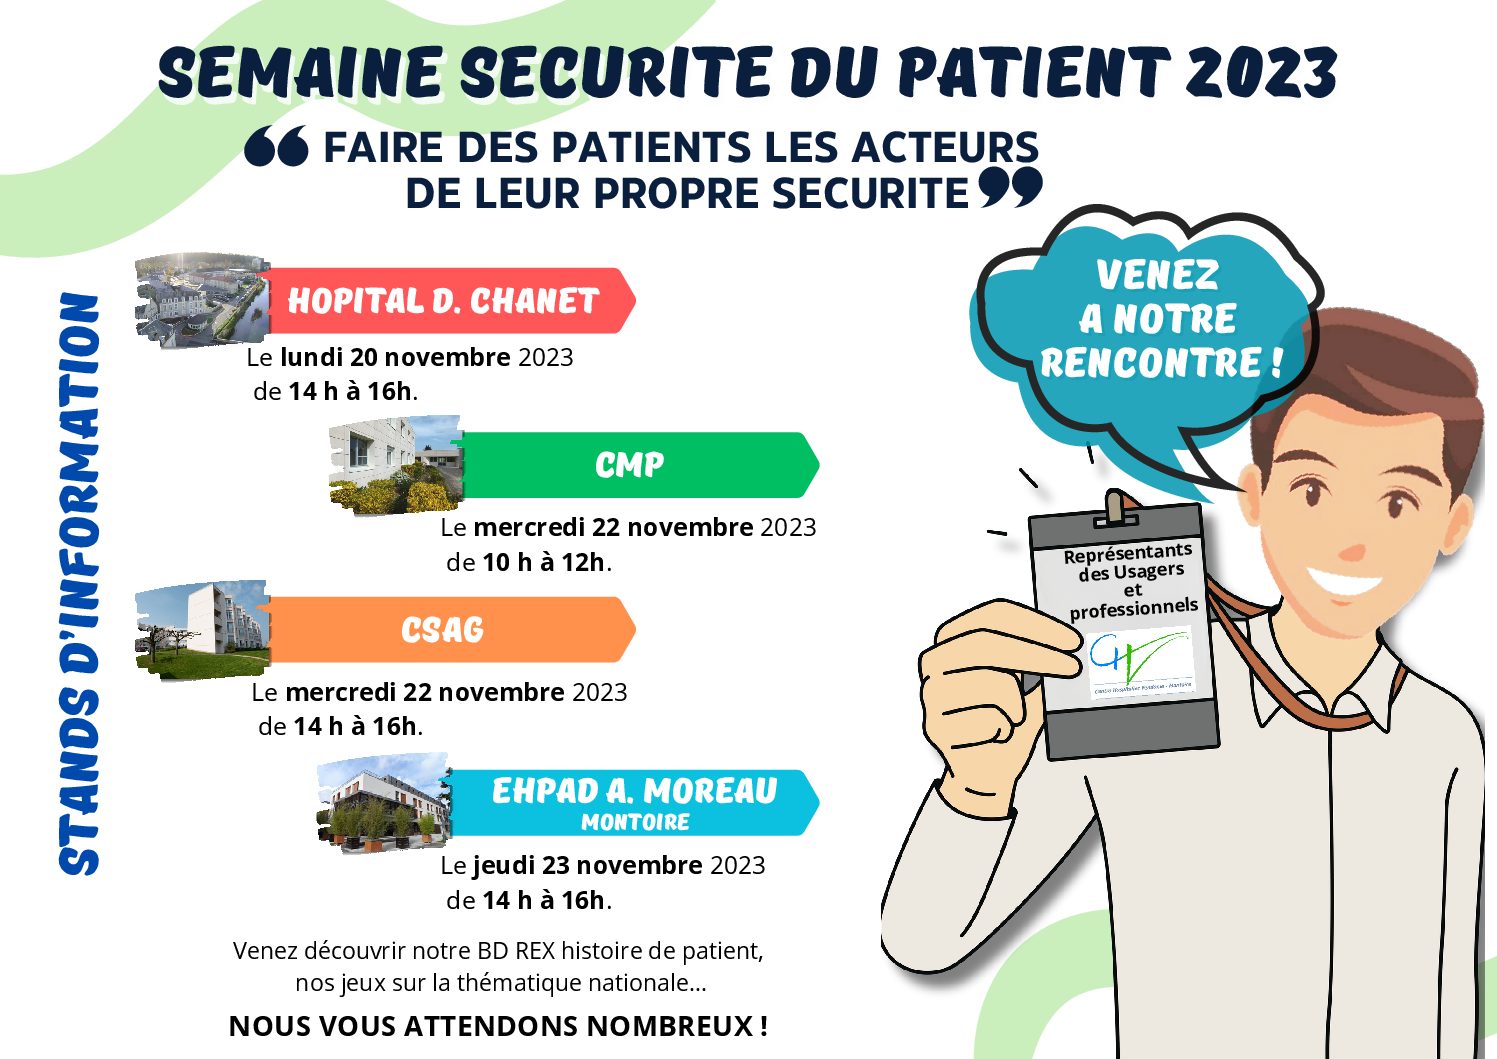 Semaine de sécurité des patients 2023